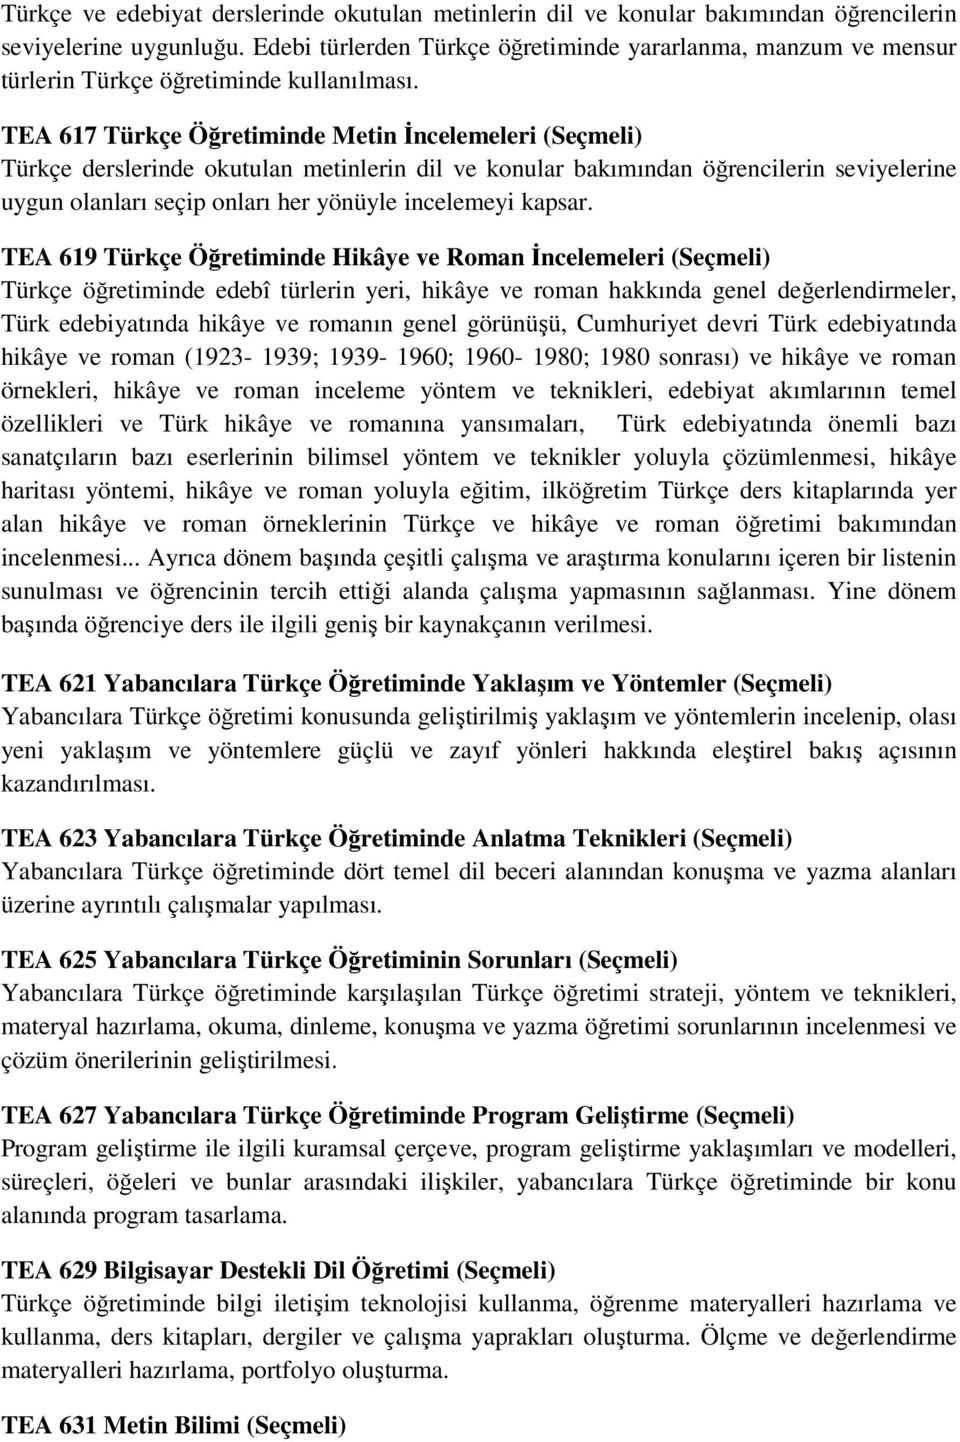 TEA 617 Türkçe Öğretiminde Metin Đncelemeleri (Seçmeli) Türkçe derslerinde okutulan metinlerin dil ve konular bakımından öğrencilerin seviyelerine uygun olanları seçip onları her yönüyle incelemeyi